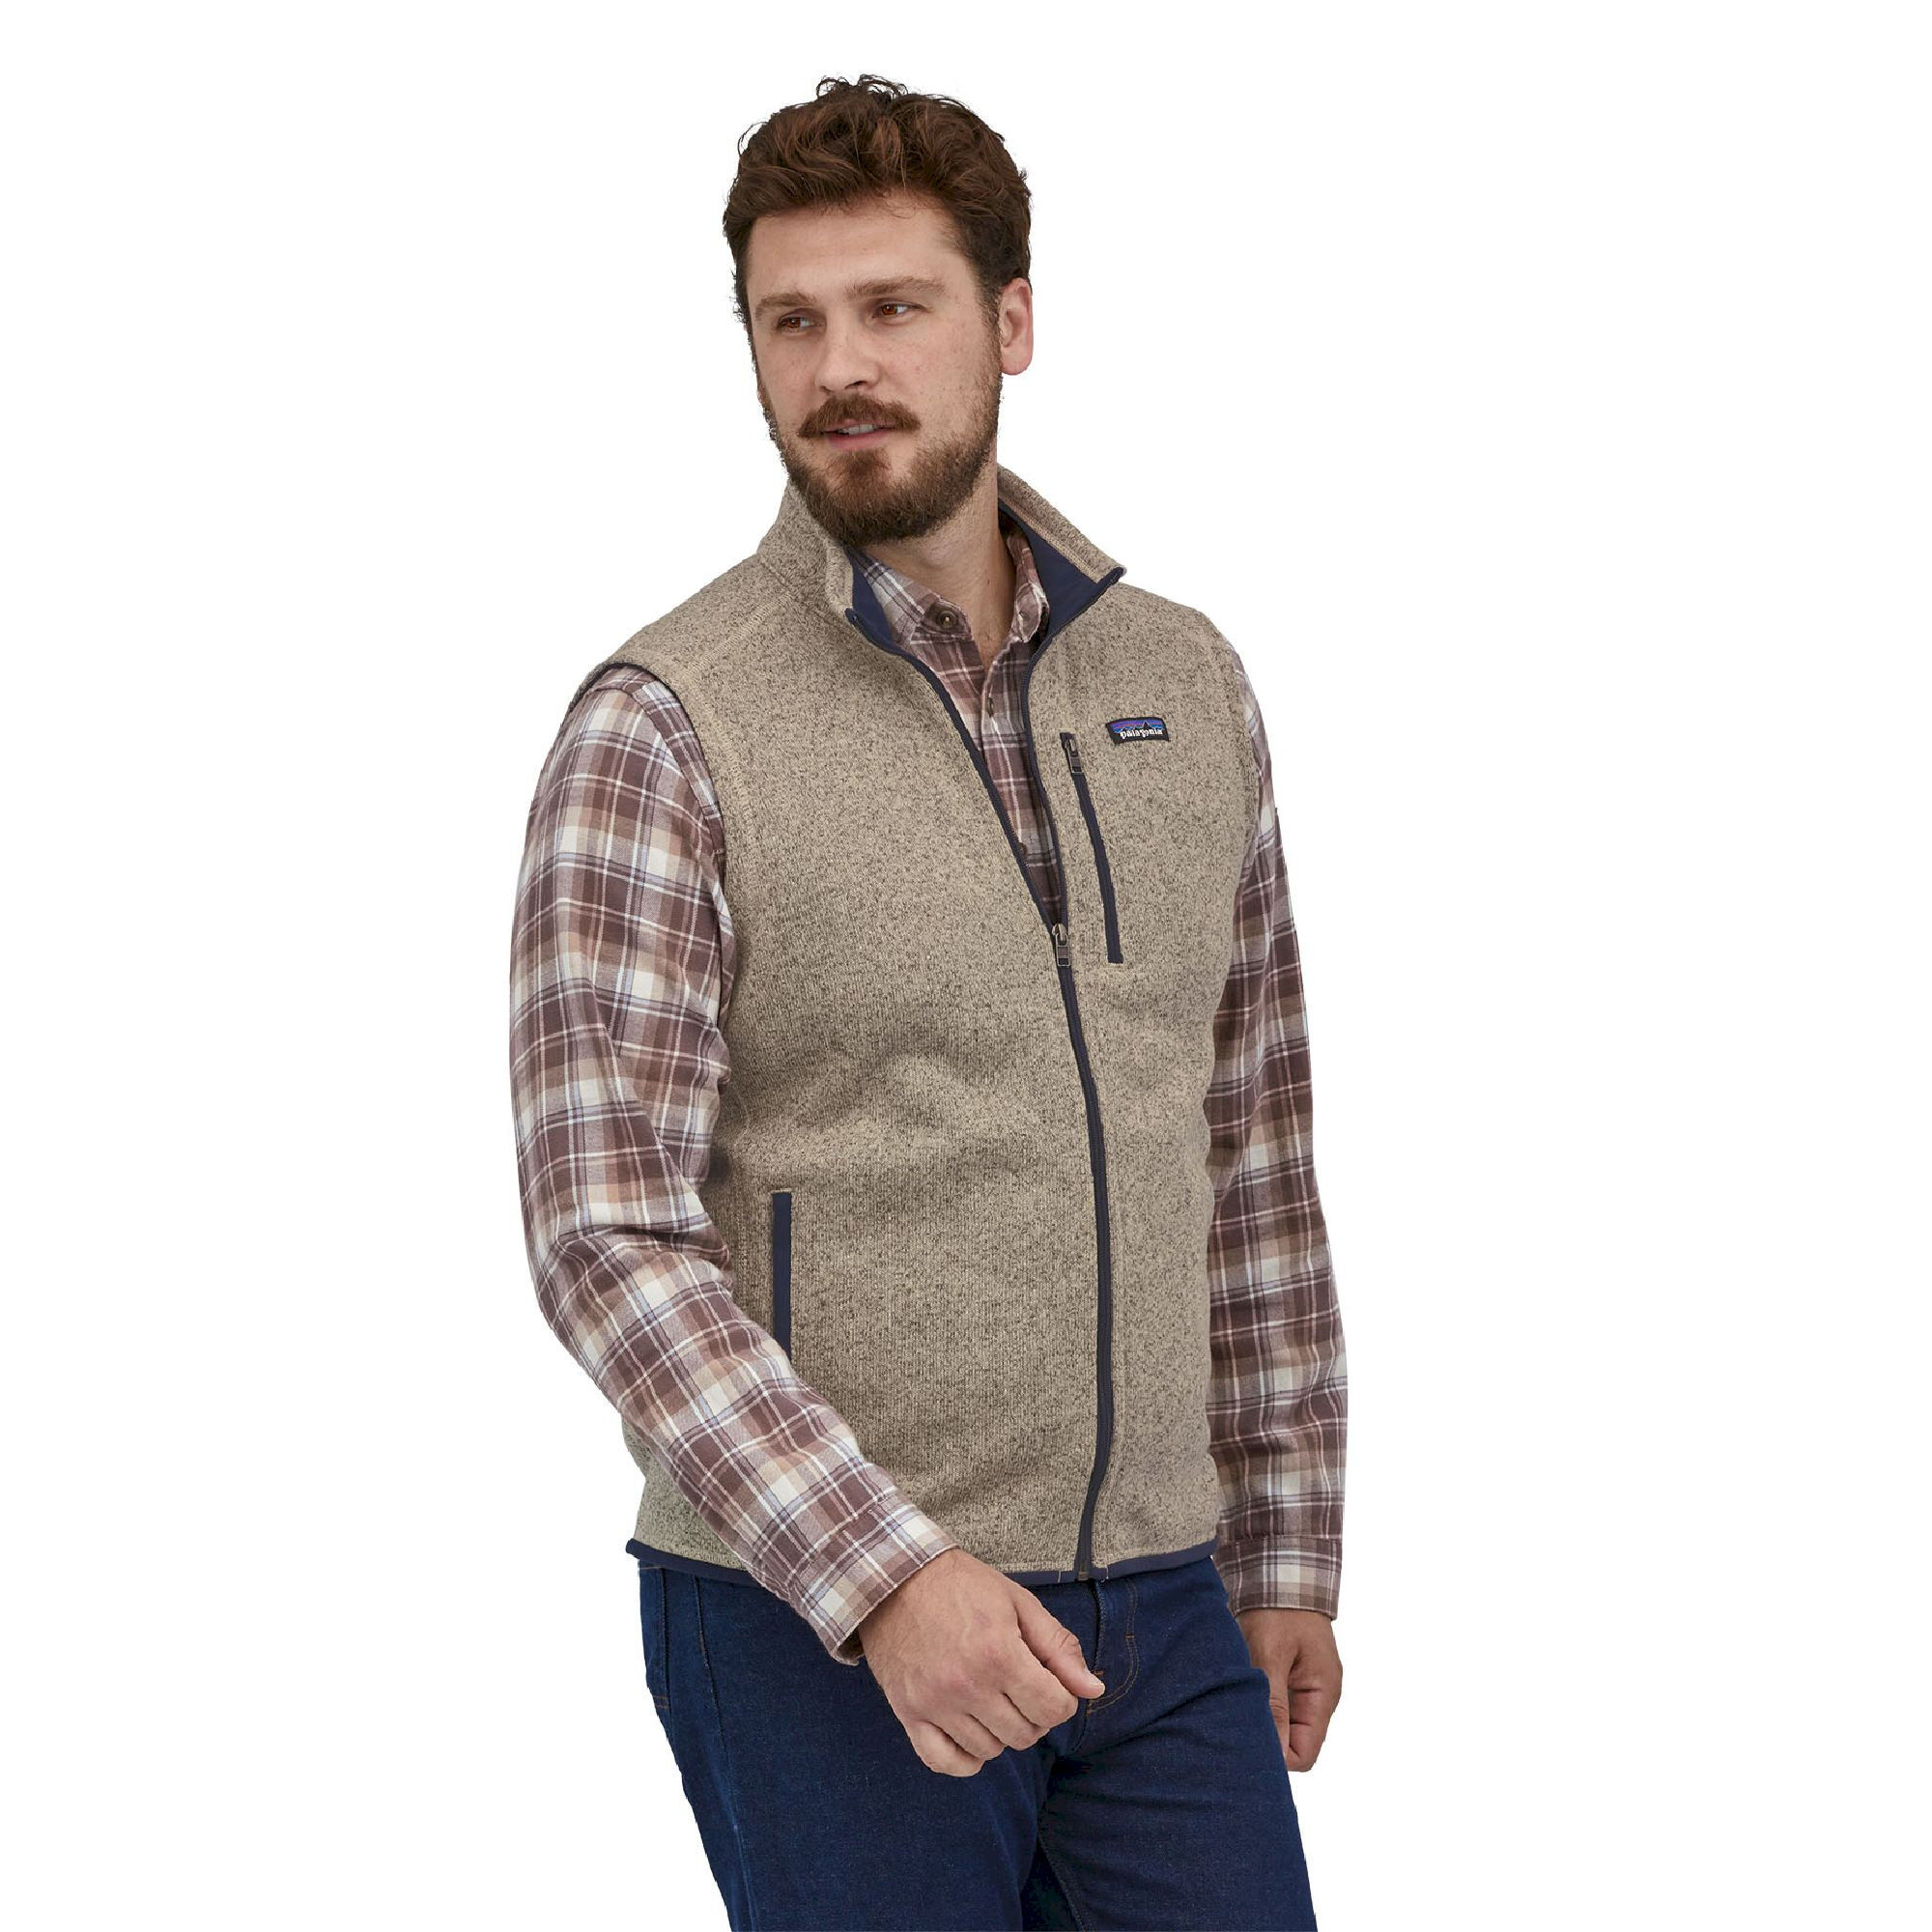 Patagonia Better Sweater Vest - Fleece vest - Men's